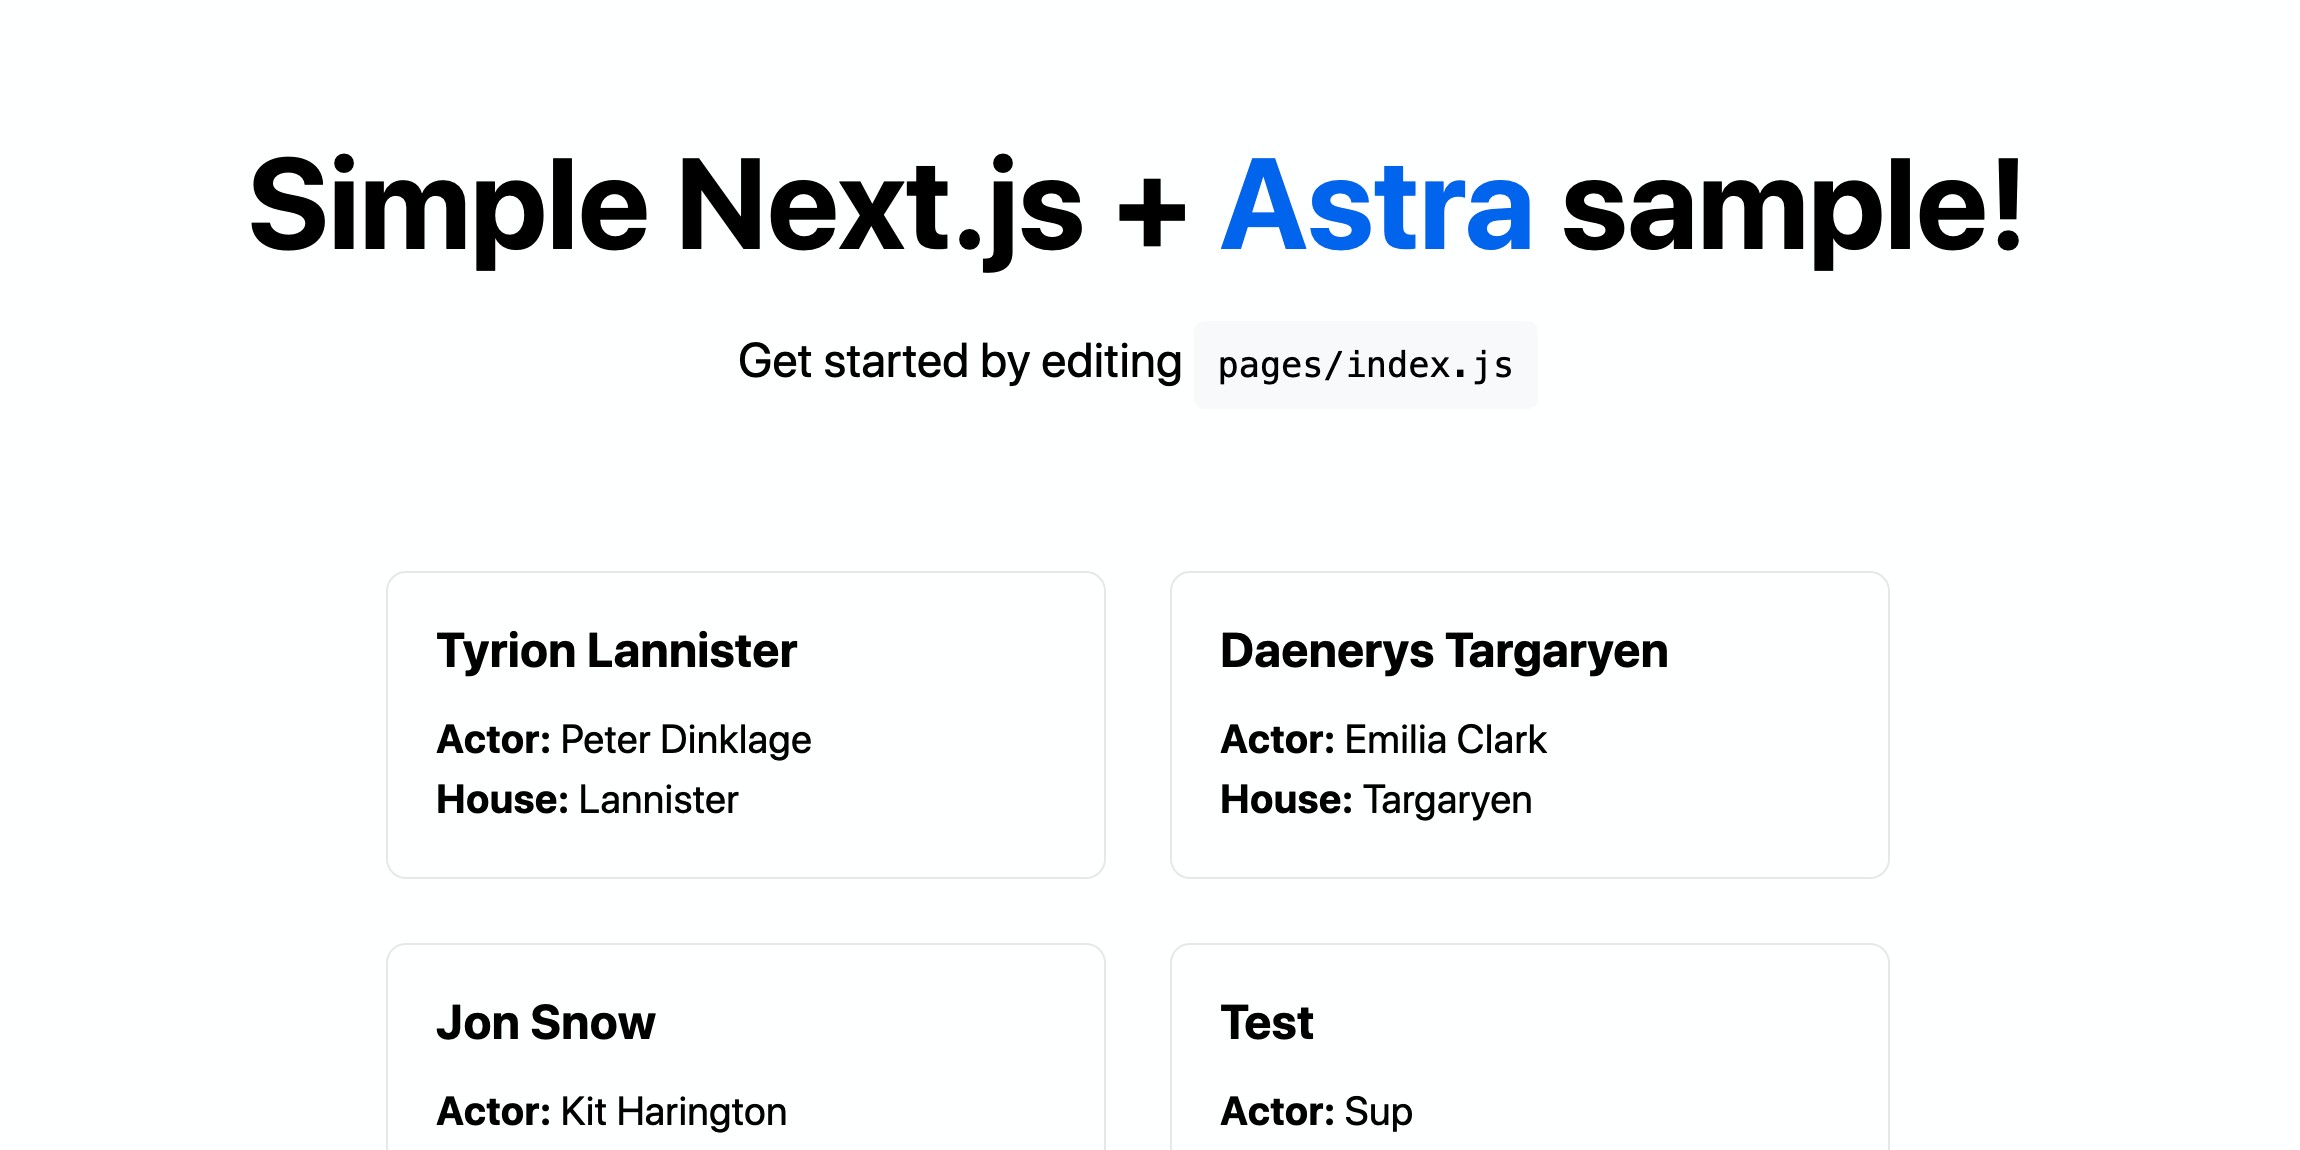 Image screenshot4 Next.js + Astra